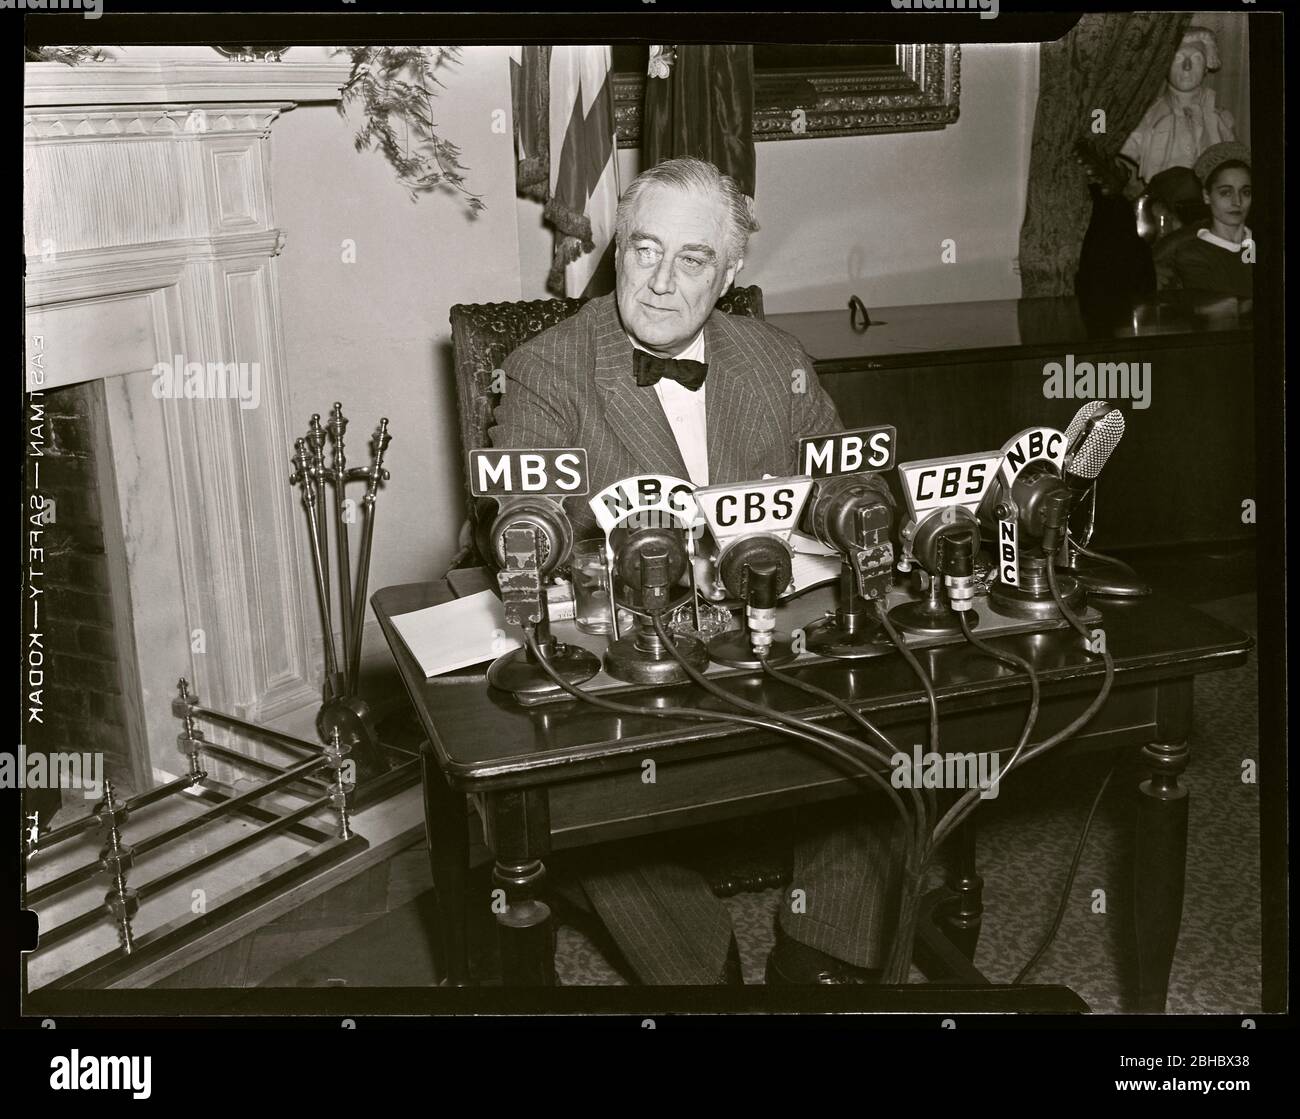 Präsident Franklin D. Roosevelt "FDR" an Nachrichten Mikrofone gibt Feuerseite Radioadresse kurz nach zwei Tagen der Angriff auf Pearl Harbor, 1941. Bild von 4x5 Zoll Negativ. Stockfoto